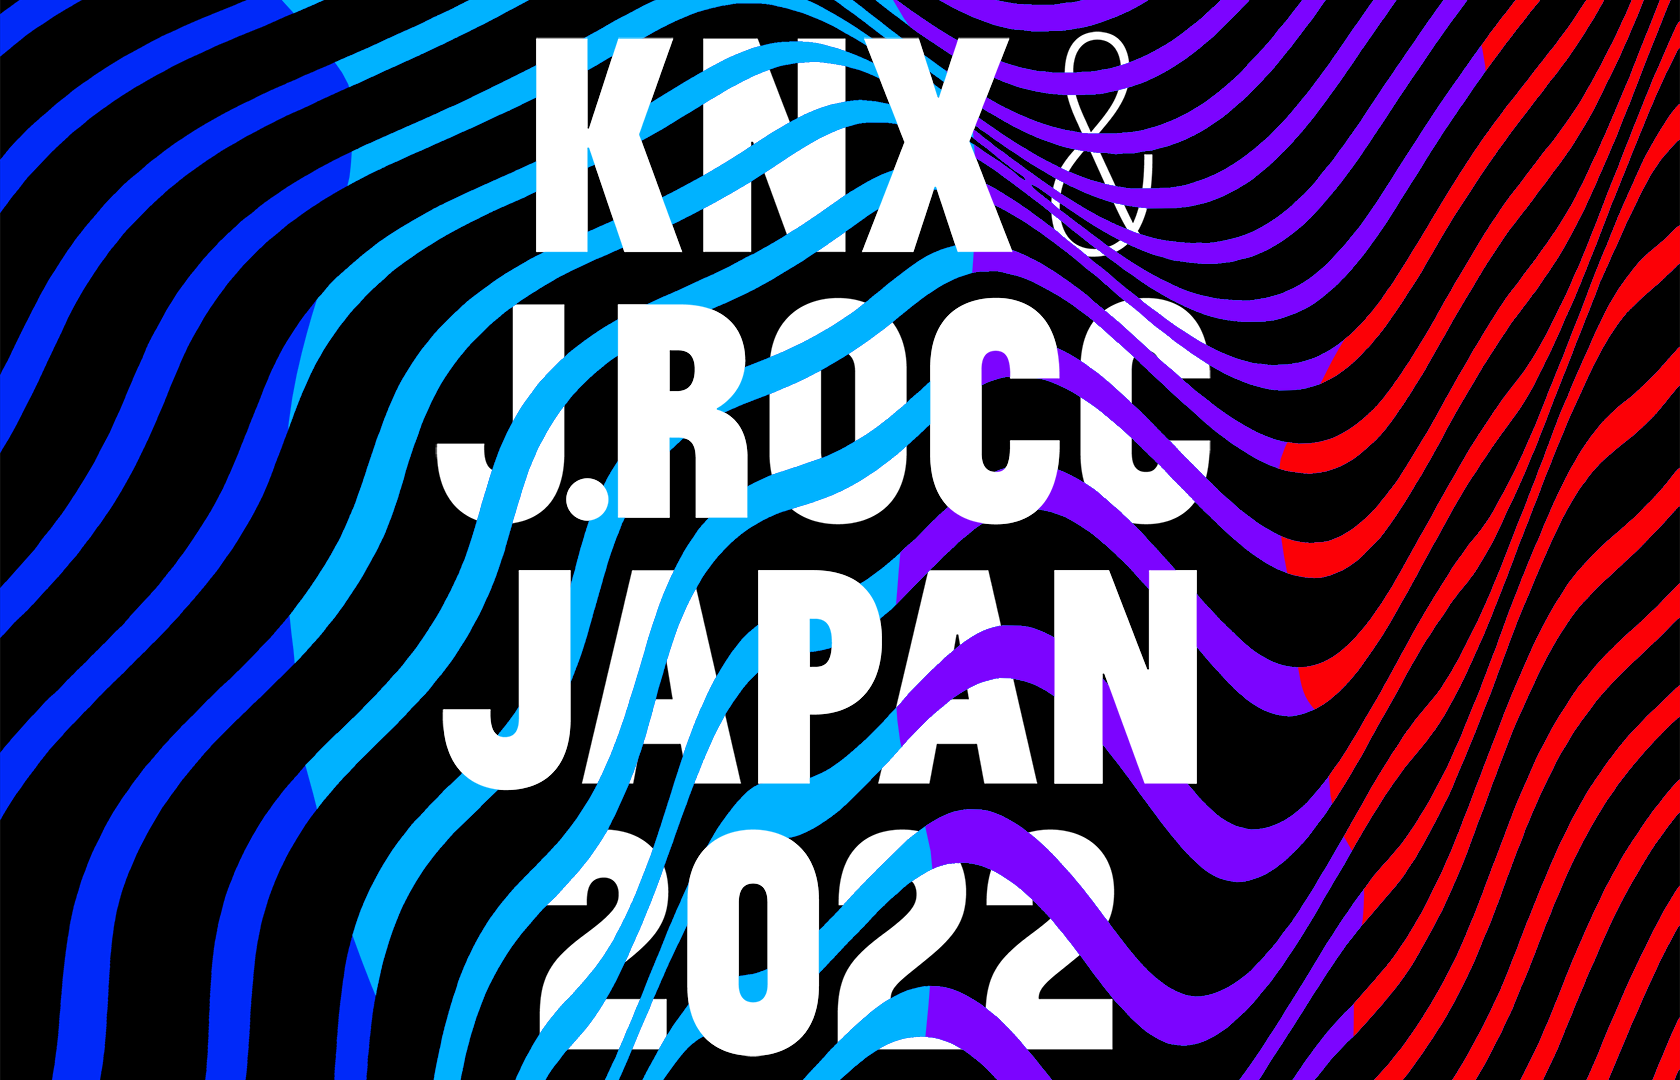 Knxwledge u0026 J.Rocc Japan Tour 2022